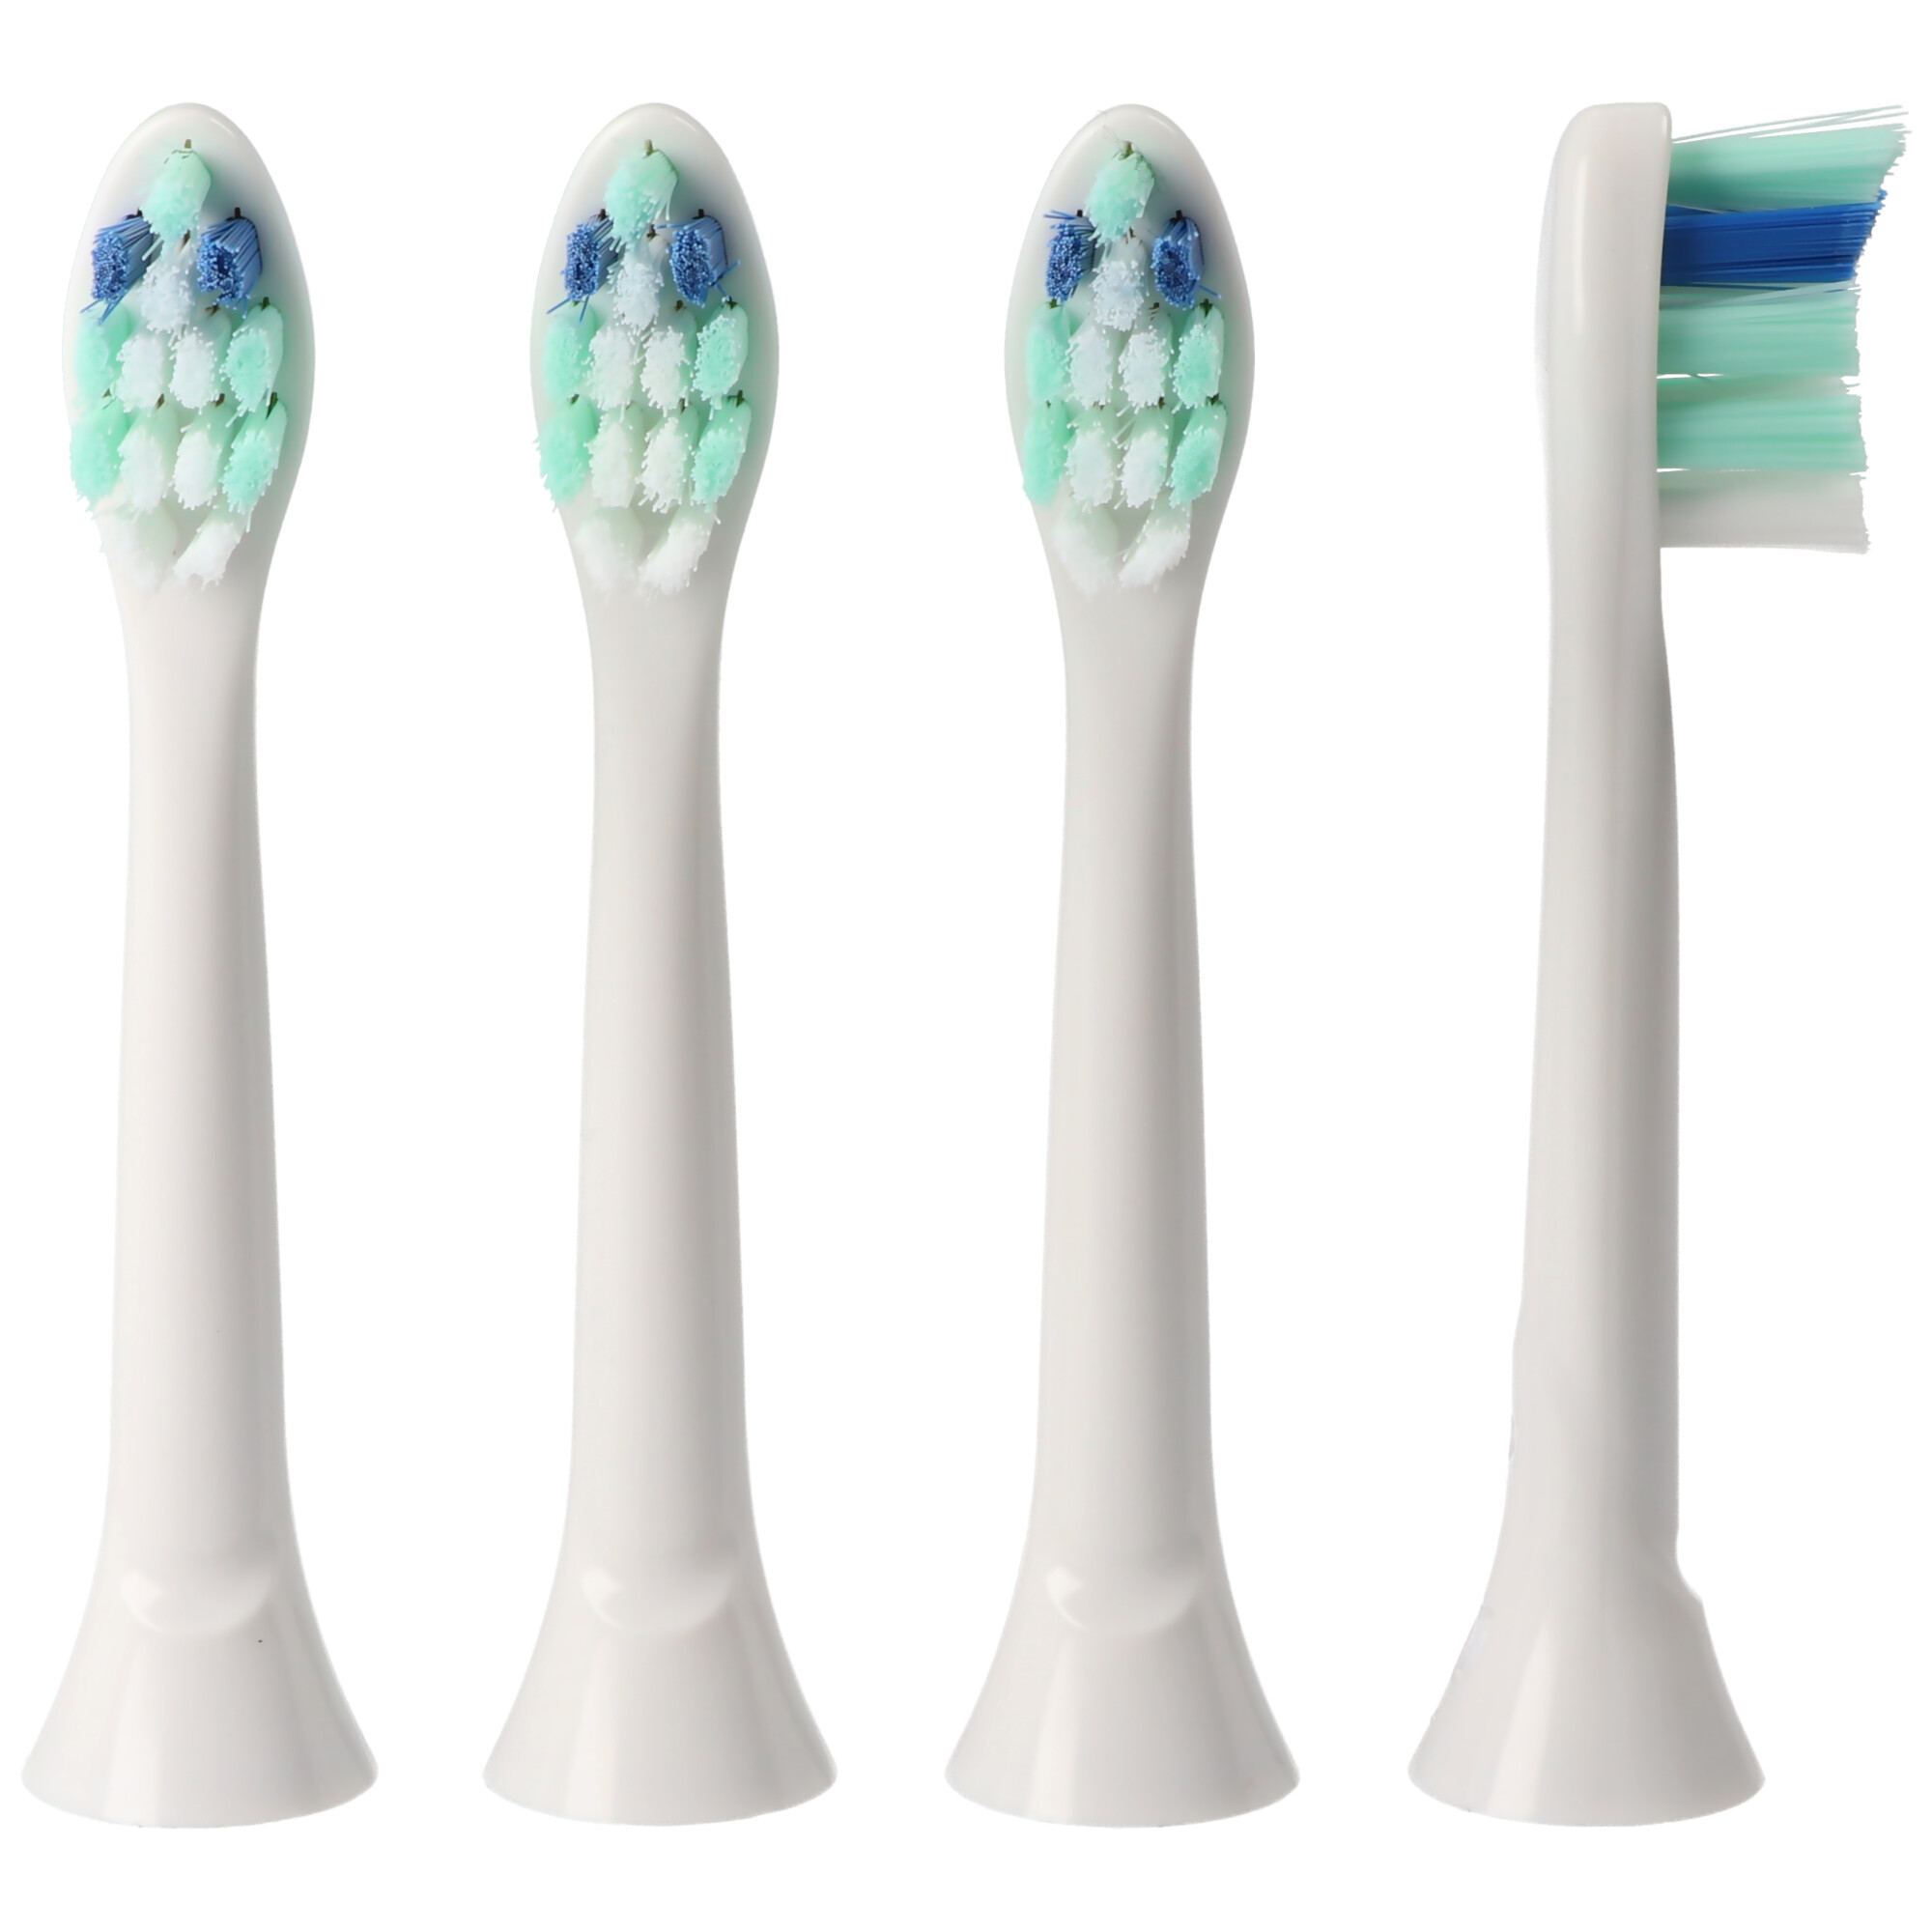 4 Stück Gum Care Cleaning Brush Ersatz-Zahnbürstenkopf für elektrische Zahnbürsten von Philips, passend z.B. für Philips HX3 HX6 HX8 HX9 Serie